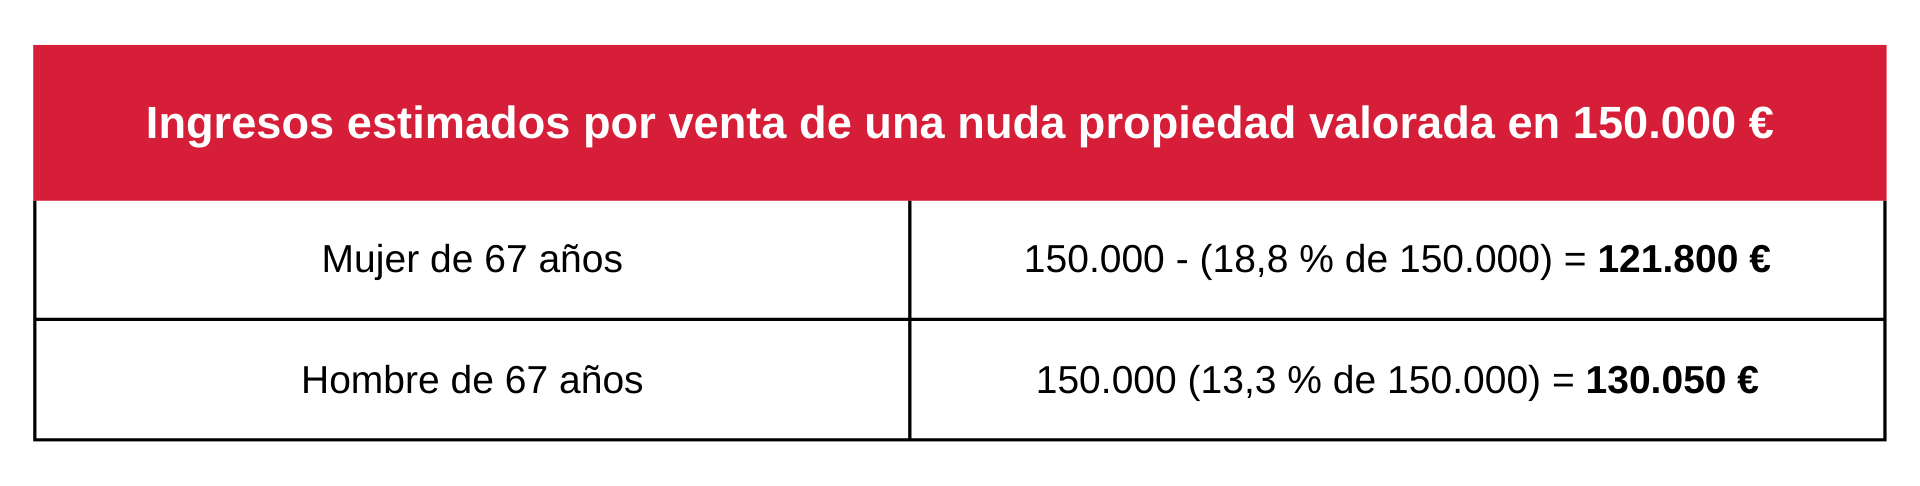 Tabla sobre ingresos estimados por venta de una nuda propiedad valorada en 150.000 €